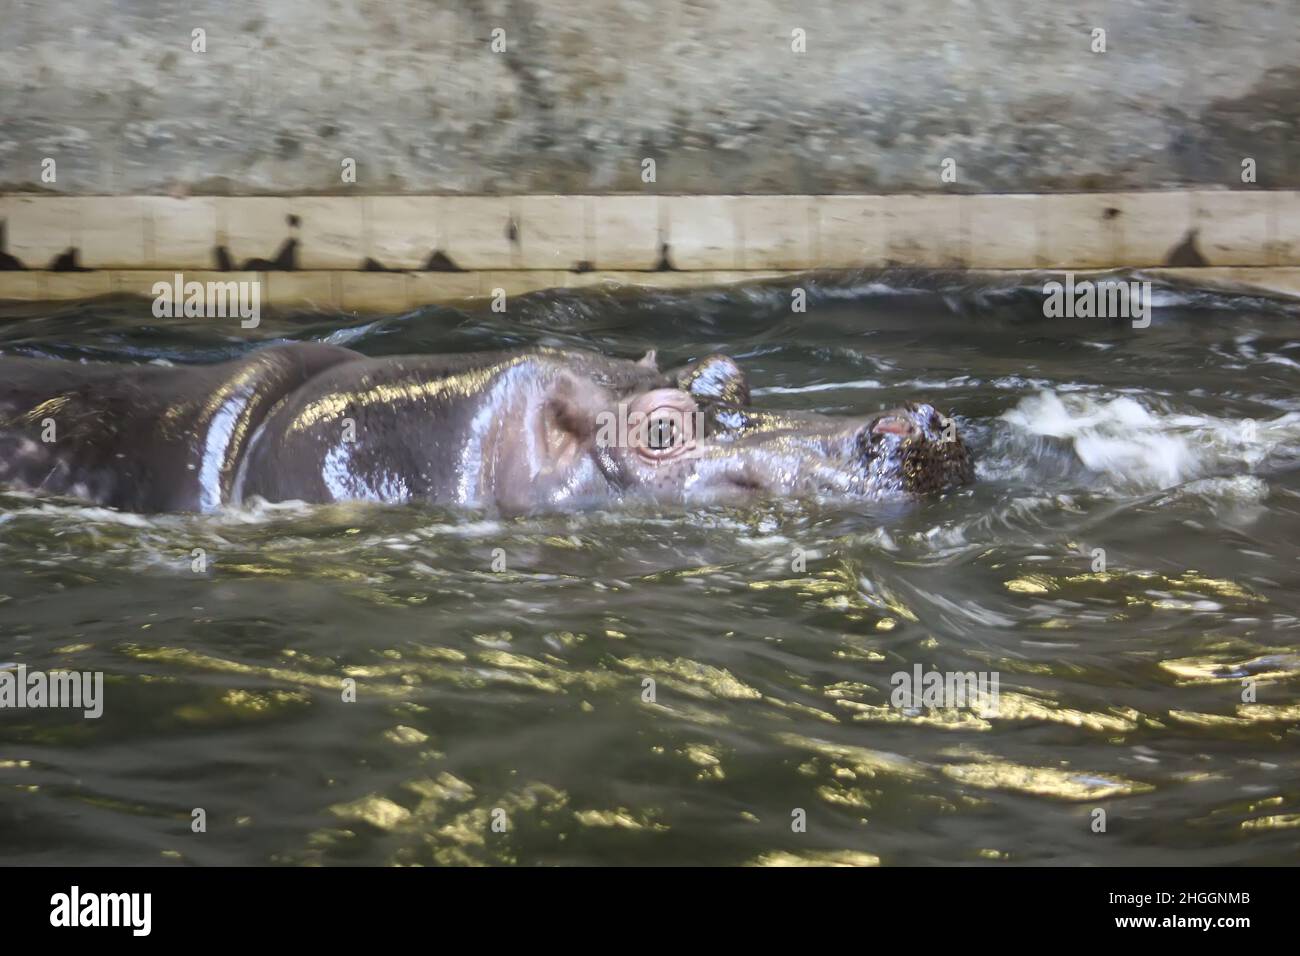 Deux hippopotames de combat dans l'eau.Hippopotame amphibius animal sauvage vivant en Afrique du Sud. Banque D'Images